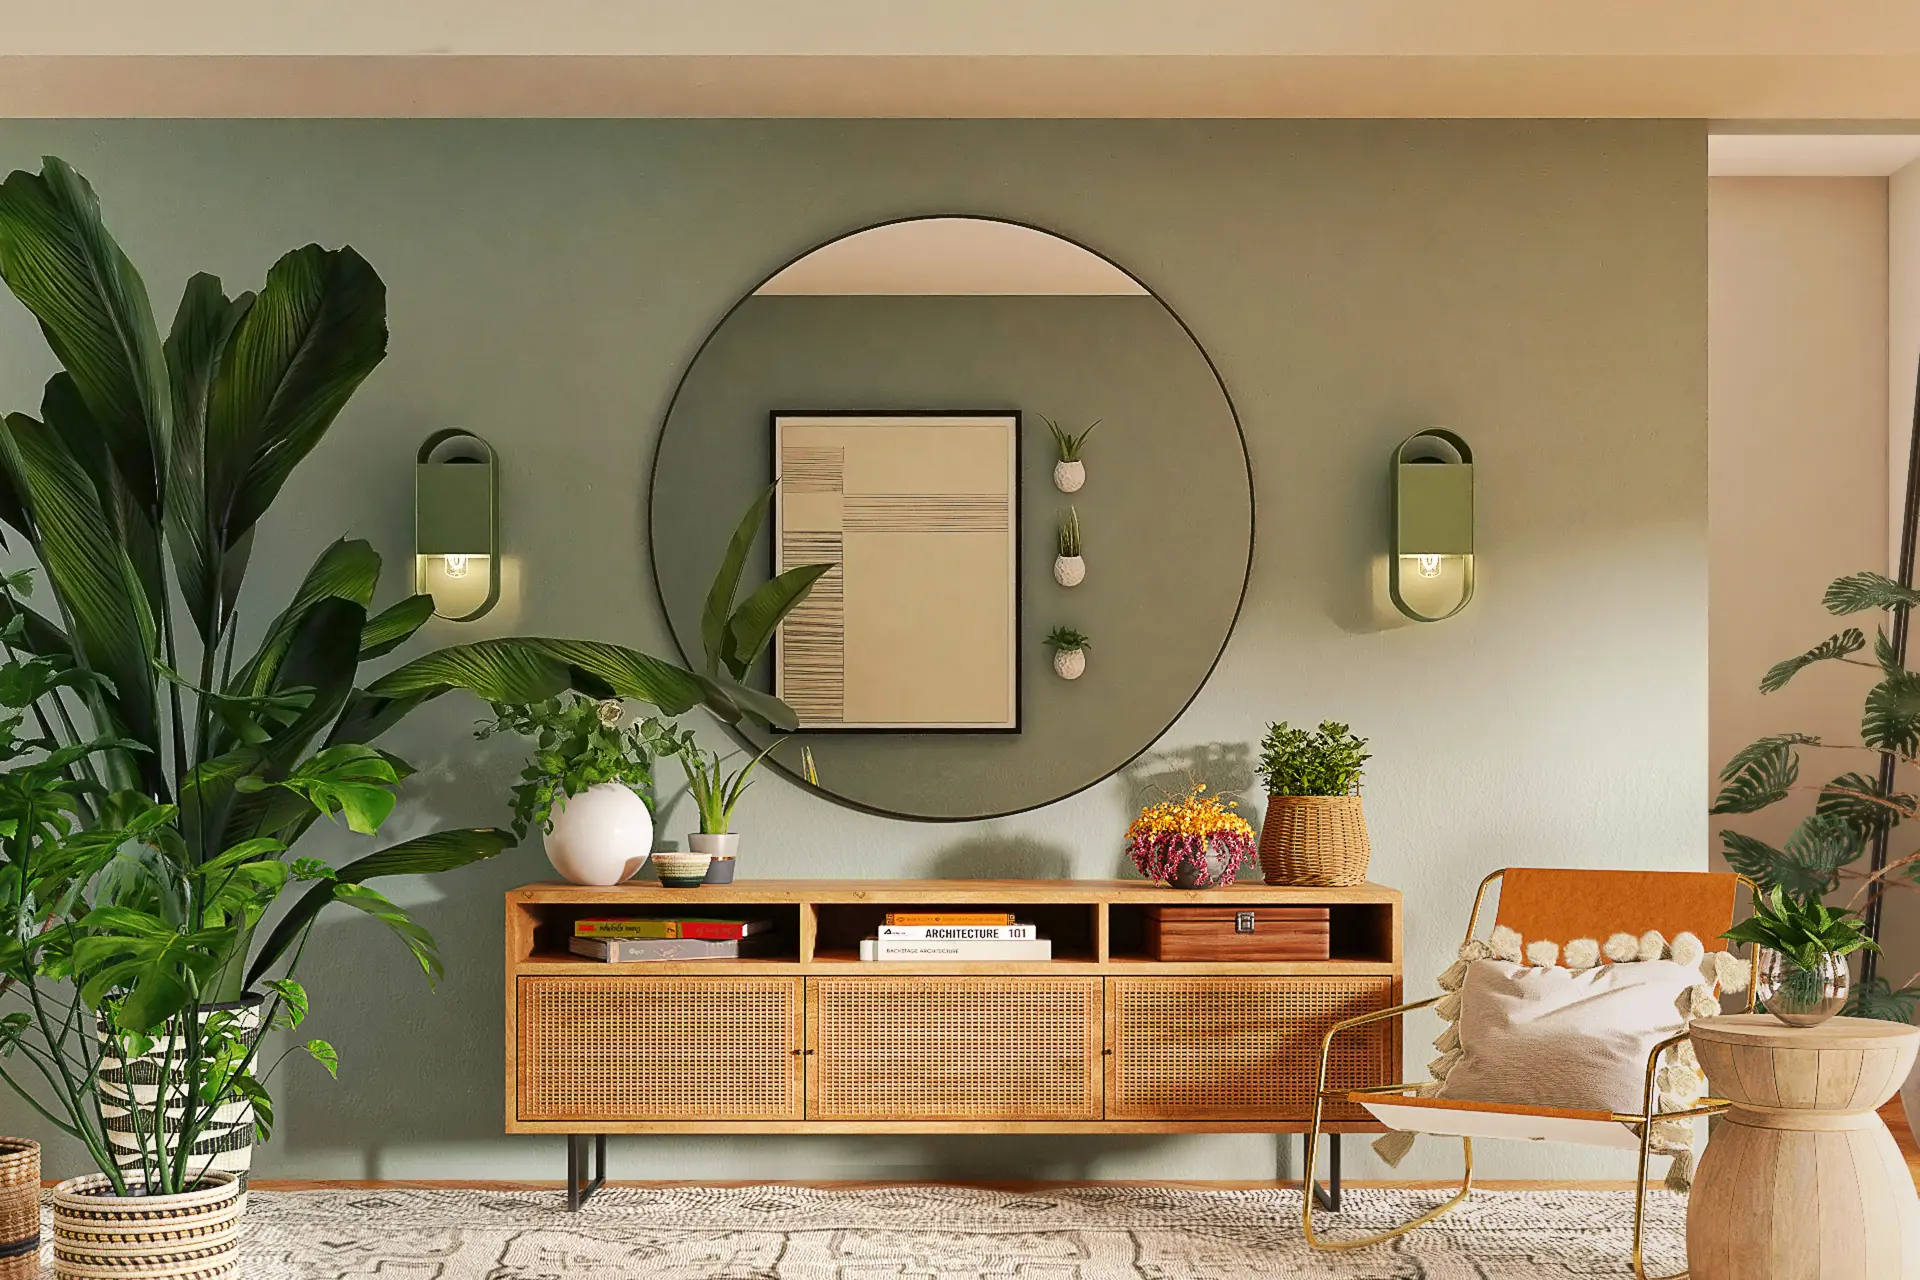 Sala decorada em estética orgânica com elementos naturais, espelho, tapete, móveis e vasos